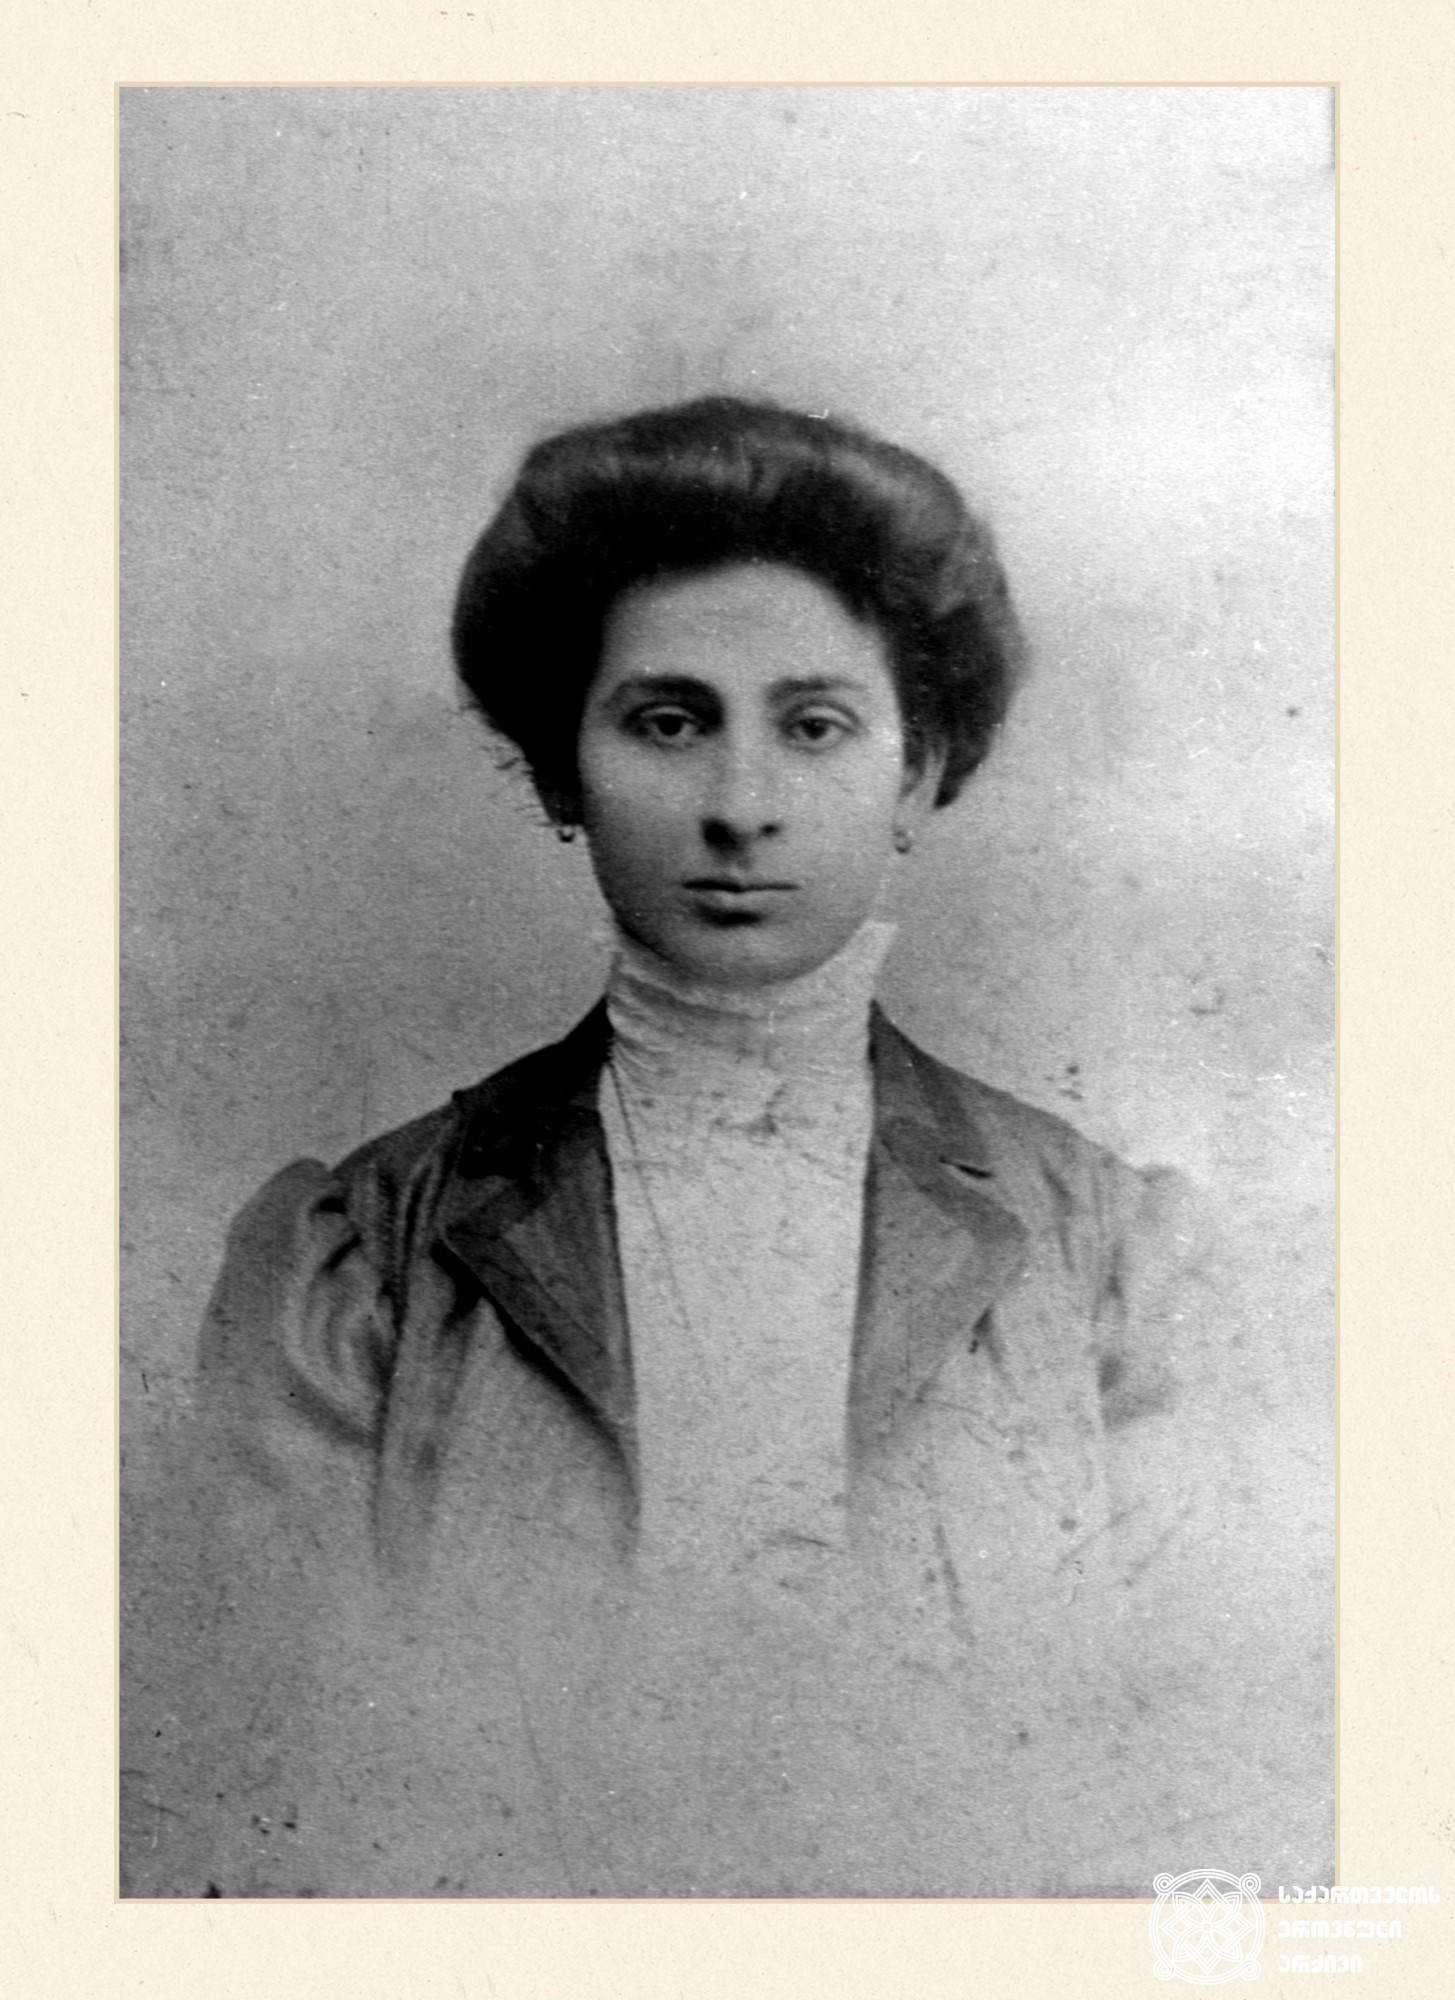 ლიდა ცქიტიშვილი-ასათიანი - პოეტ ლადო ასათიანის დედა. რუსული ენისა და ლიტერატურის მასწავლებელი. იგი უზბეკეთში - გადასახლებაში გარდაიცვალა 1937 წელს.
Lida Tskitishvili - Mother of poet Lado Asatiani. Teacher of Russian Language and Literature.
In 1937 she was exiled to Uzbekistan, where she died.